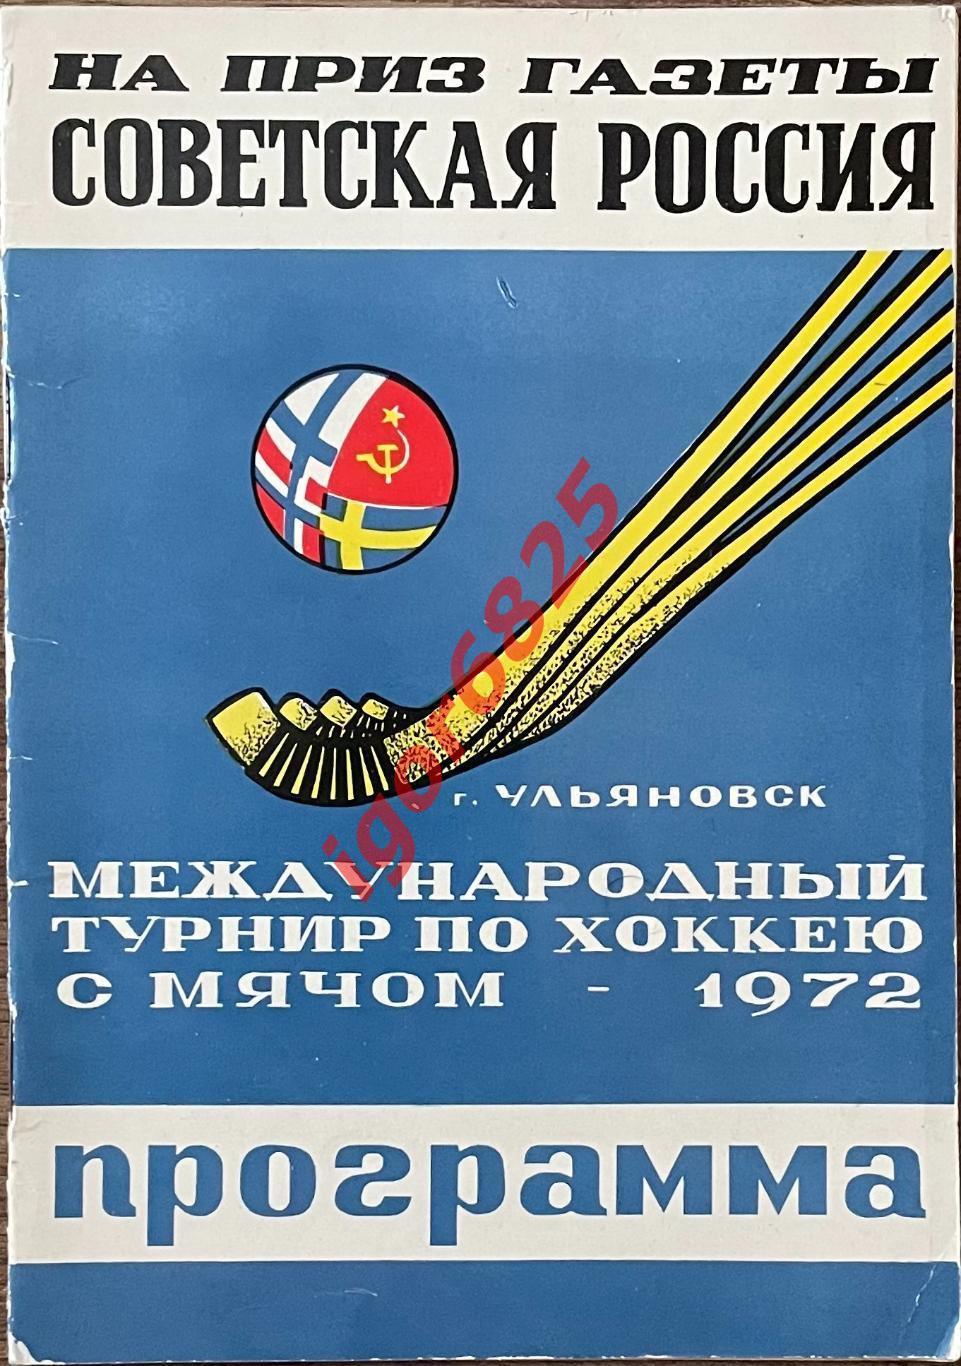 Хоккей с мячом. Турнир на приз газеты Советская Россия. 14-18 января 1972 года.